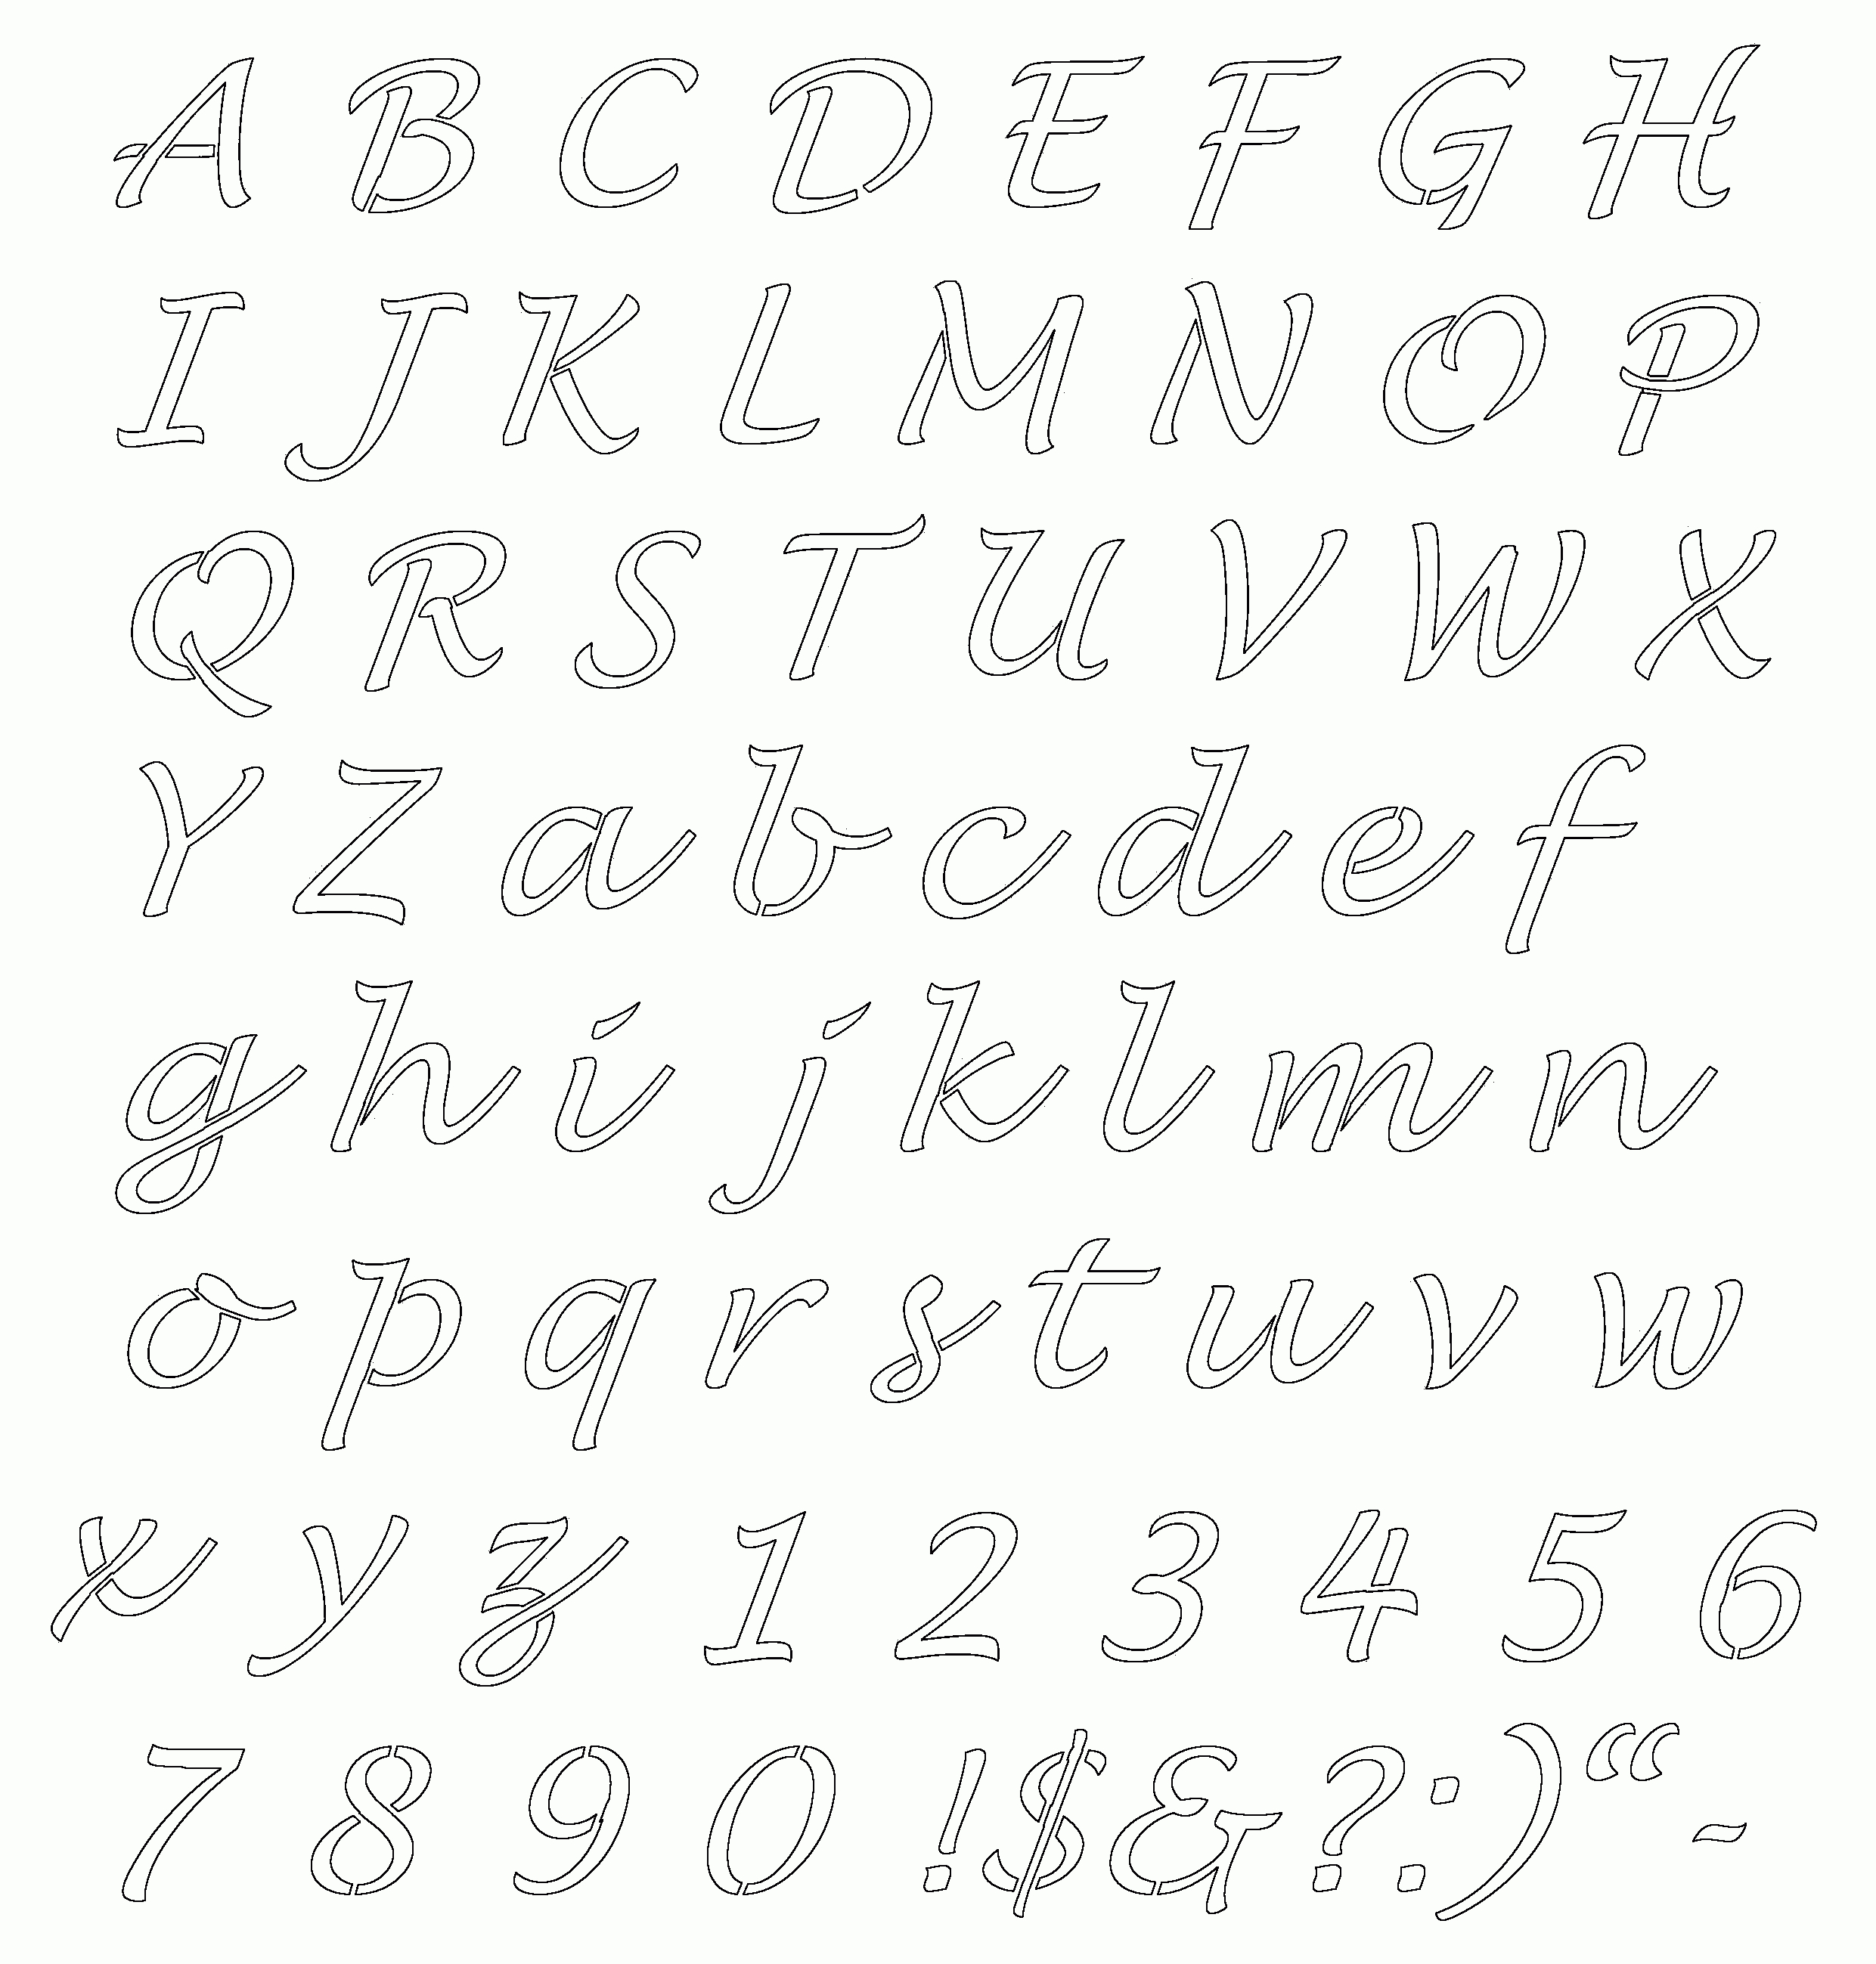 Free Online Alphabet Templates | Stencils Free Printable Alphabetaug - Free Printable Alphabet Stencils